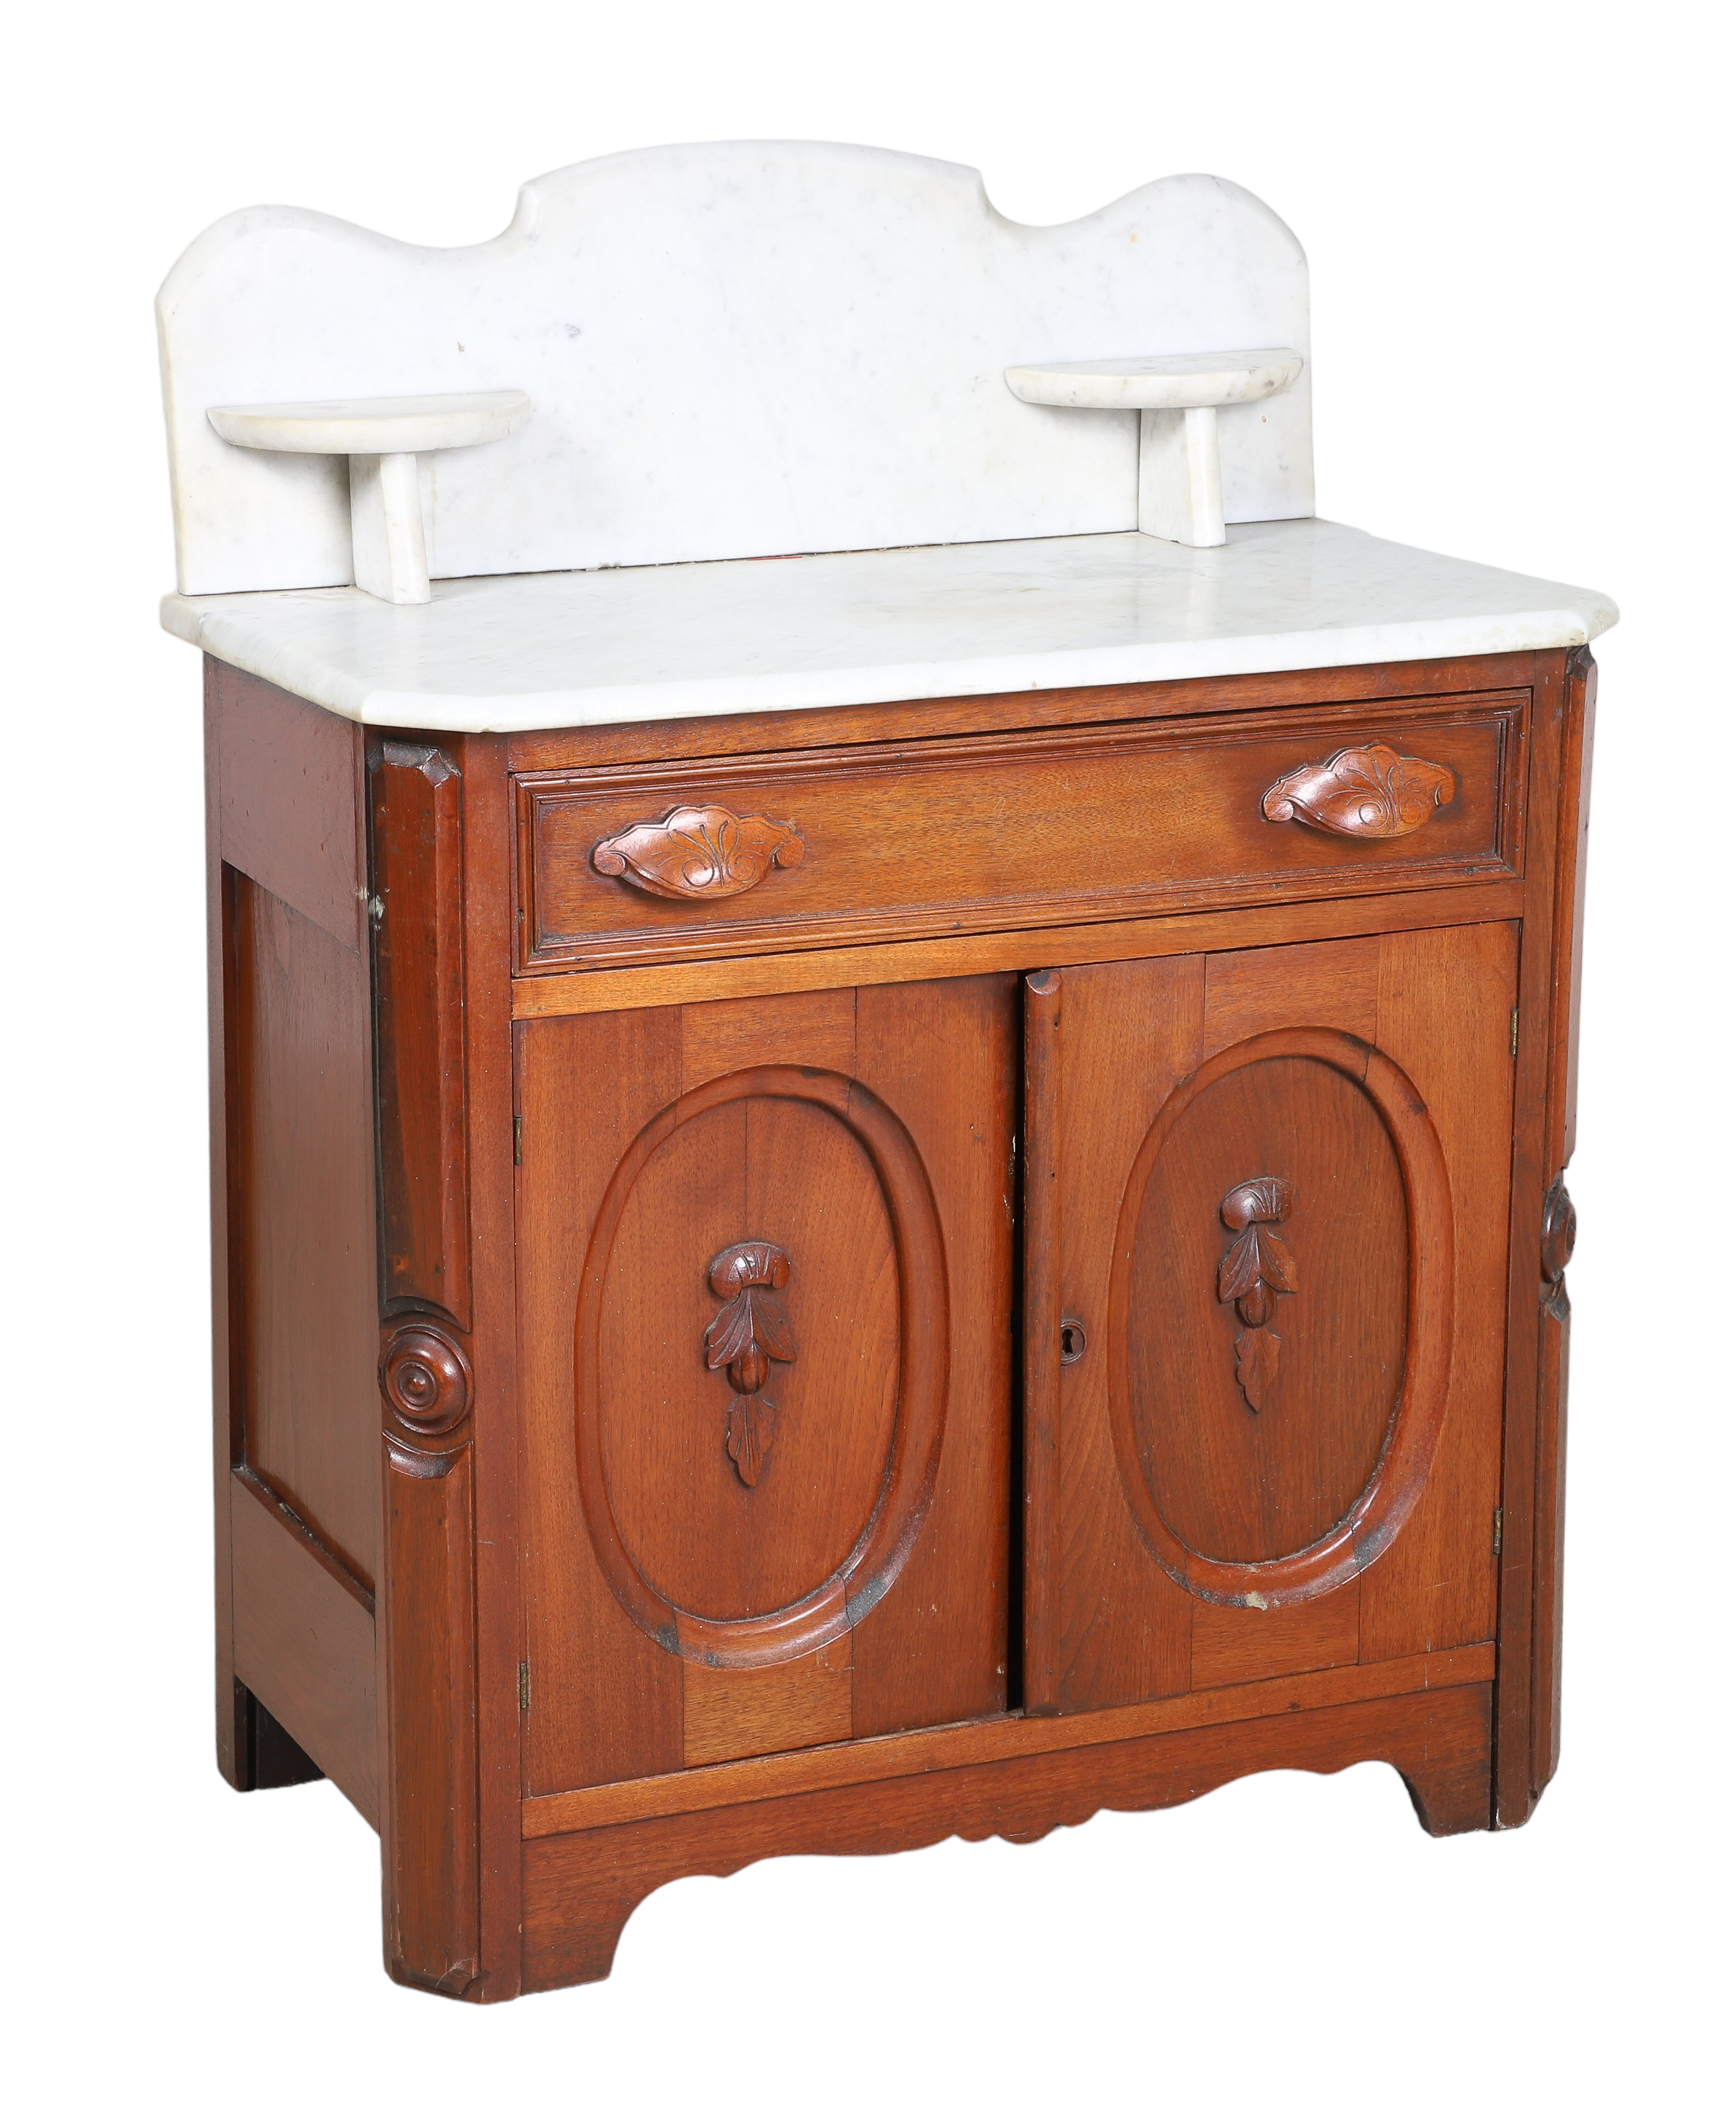 Victorian marbletop washstand  2e1de6